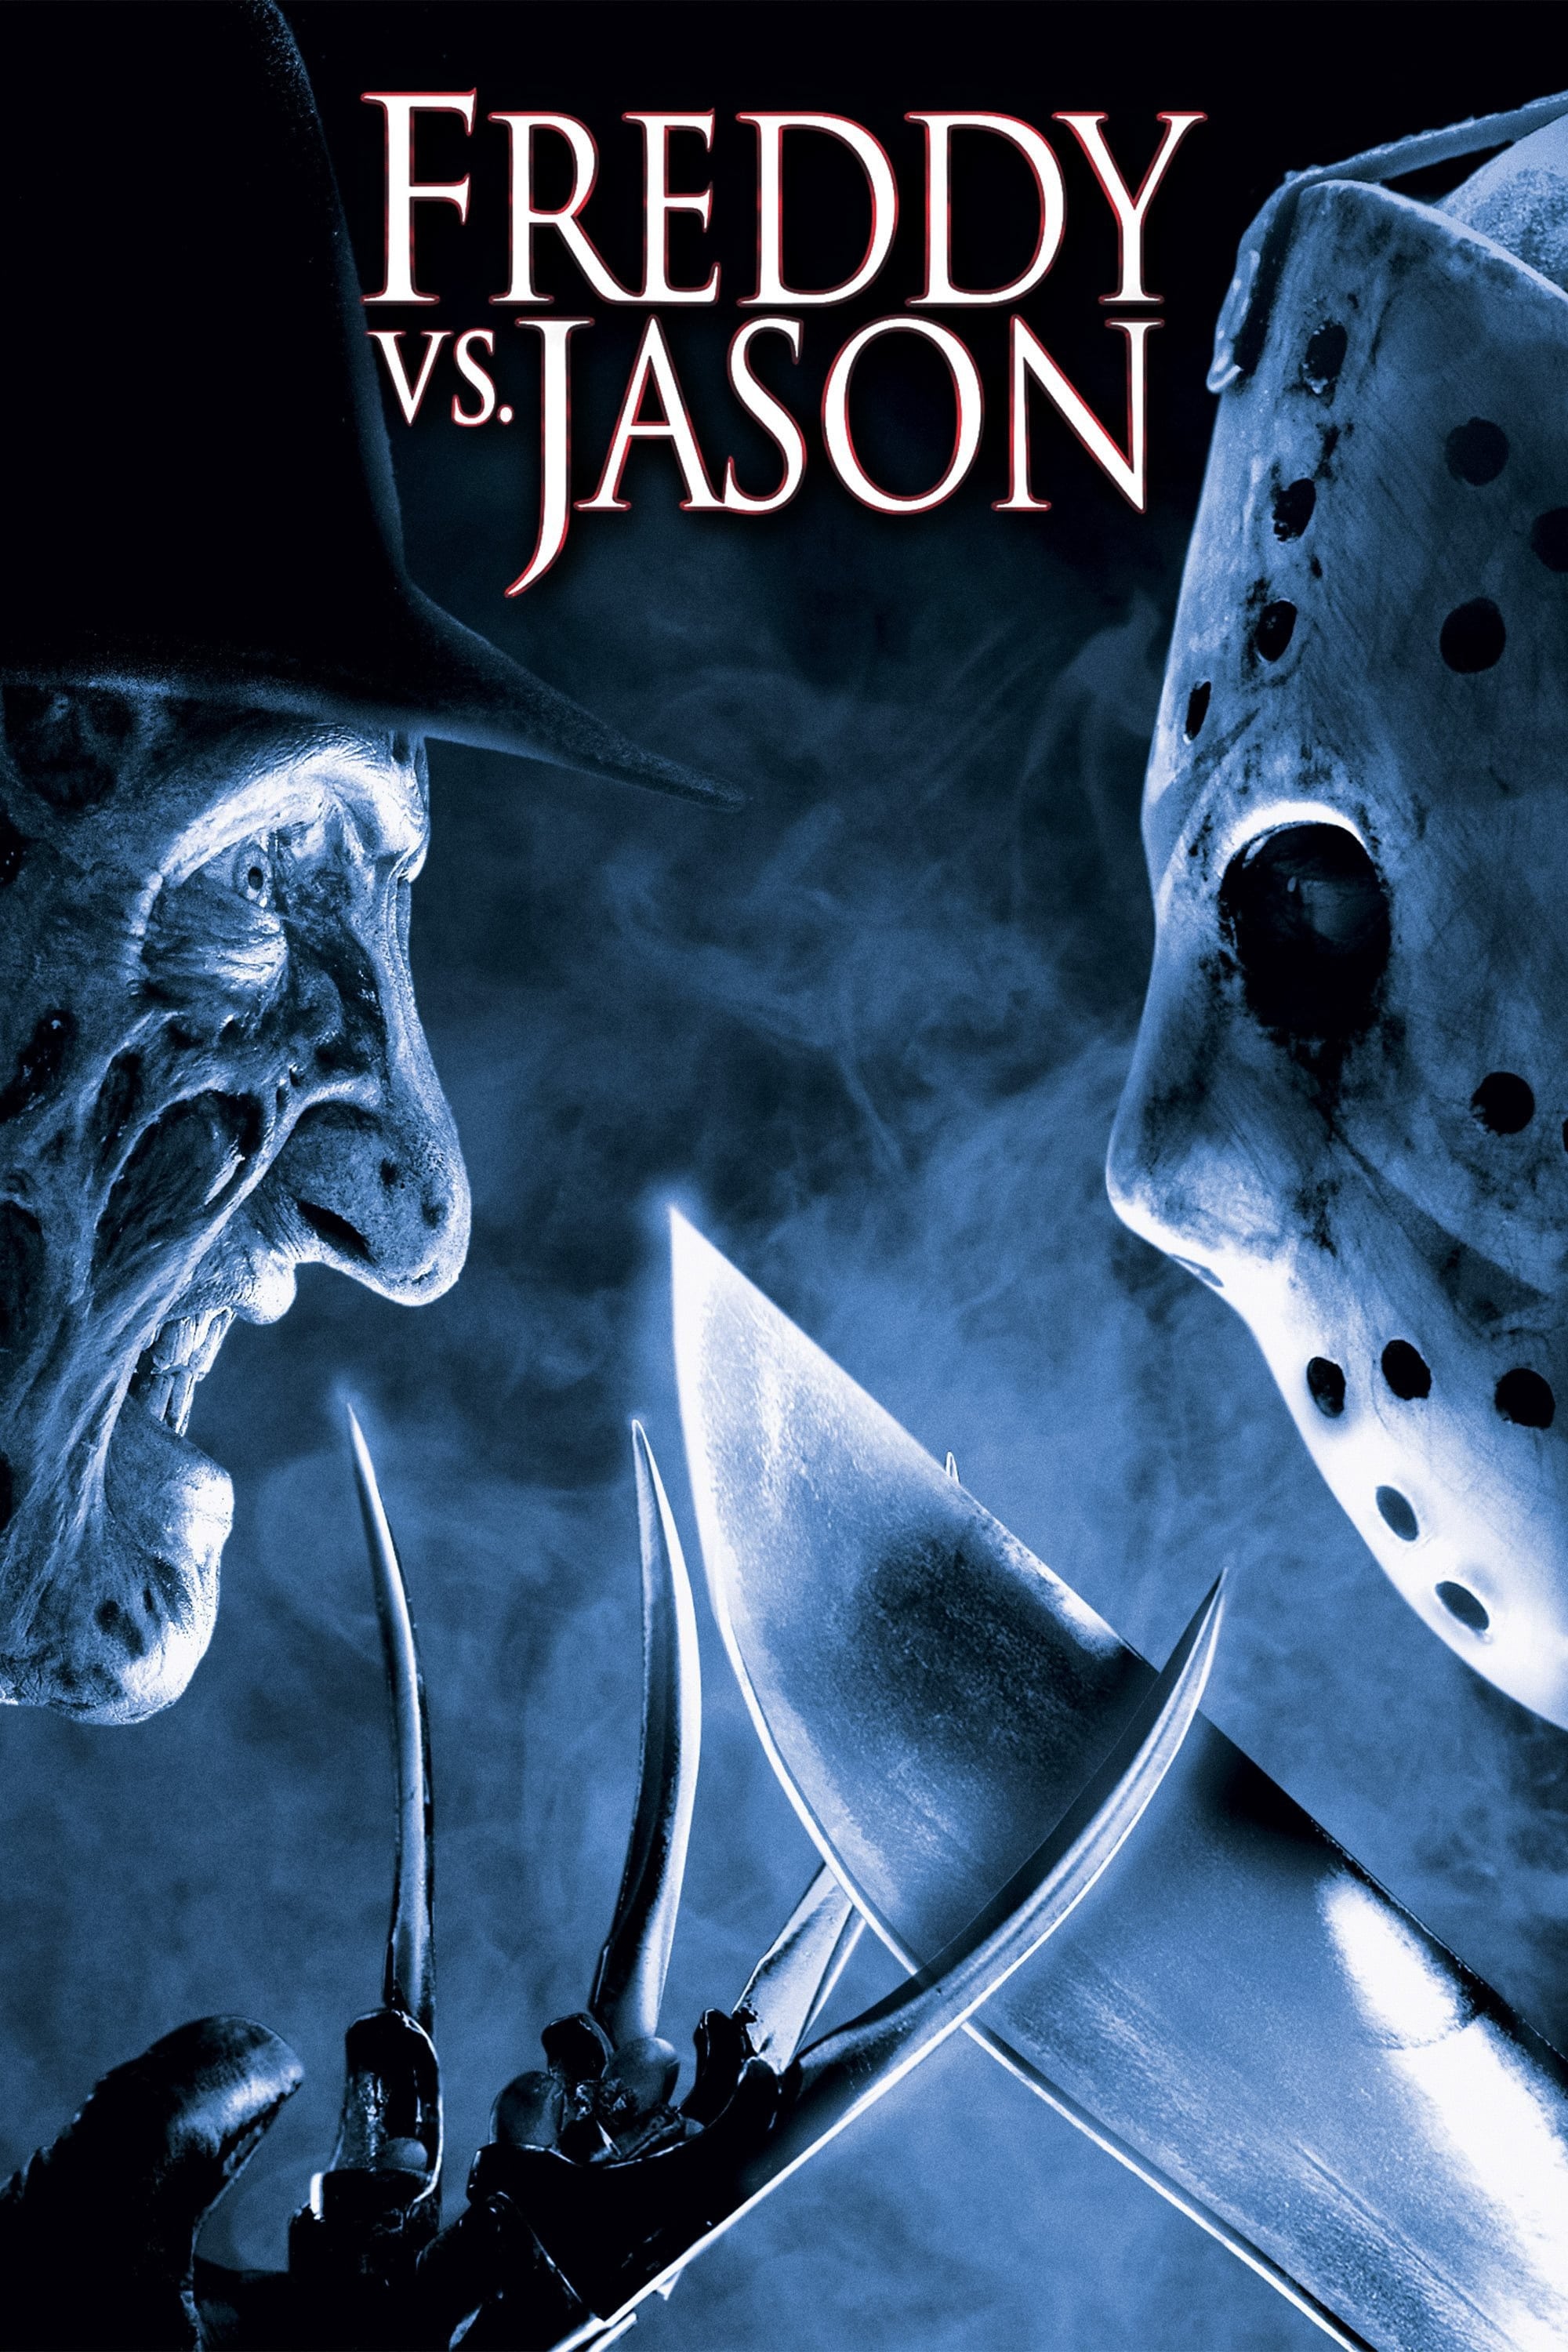 Freddy contre Jason (2003)